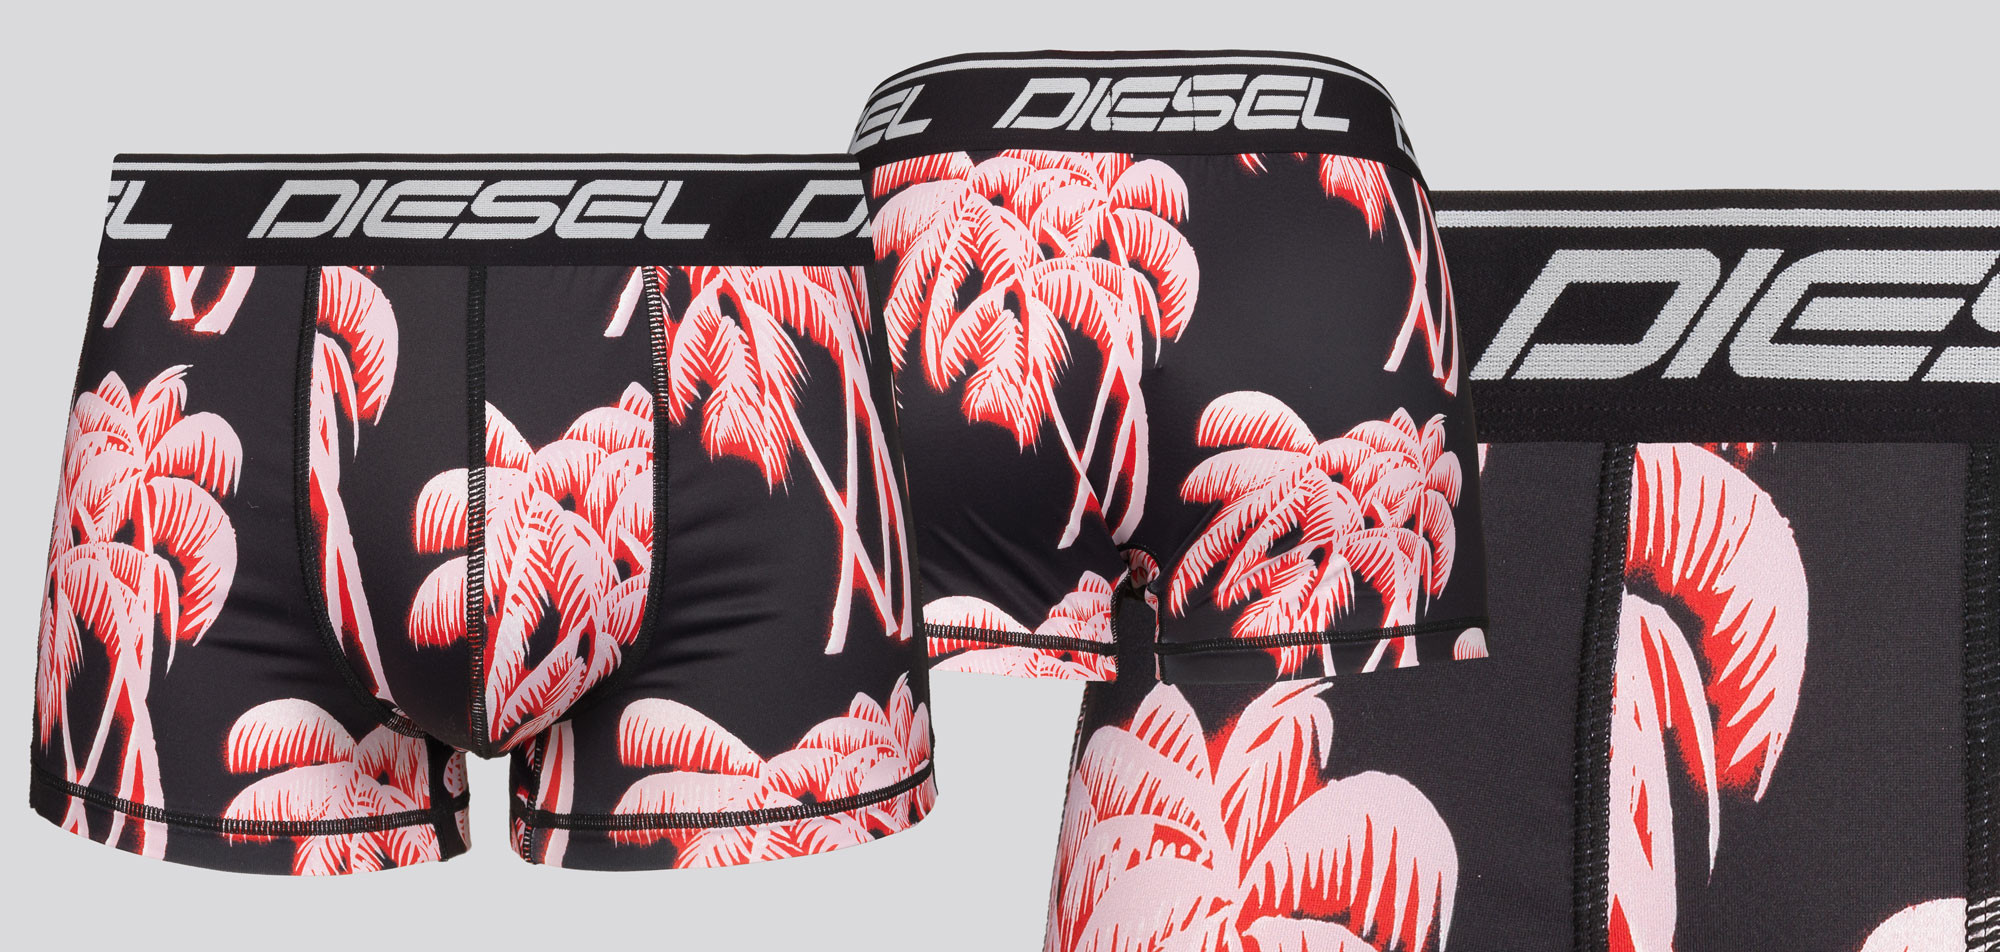 Diesel Microfiber Boxershort KLAM Damien, color Nee